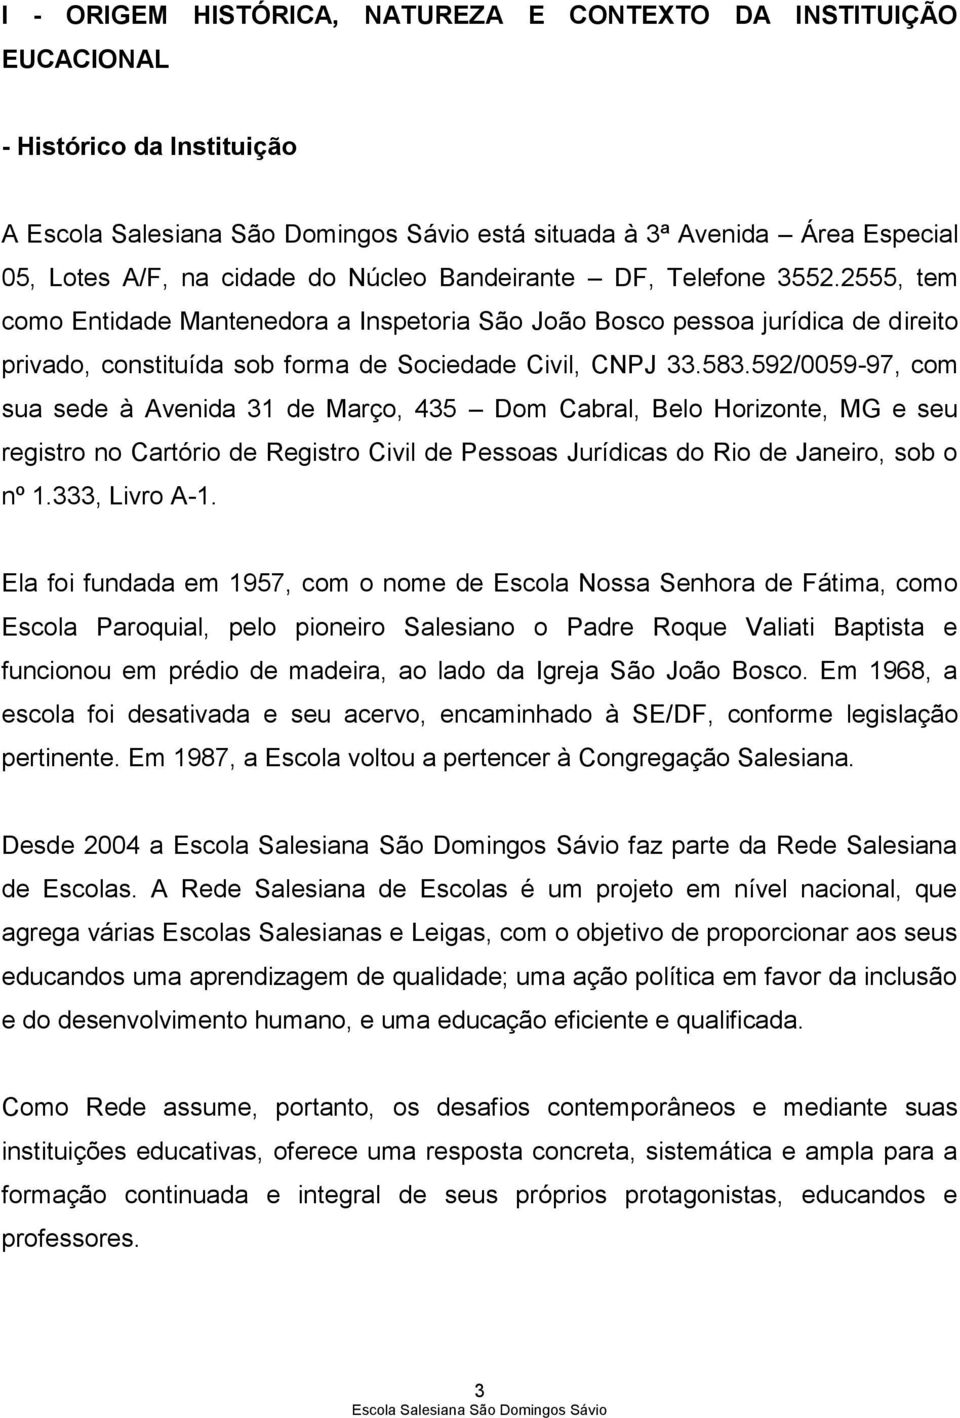 592/0059-97, com sua sede à Avenida 31 de Março, 435 Dom Cabral, Belo Horizonte, MG e seu registro no Cartório de Registro Civil de Pessoas Jurídicas do Rio de Janeiro, sob o nº 1.333, Livro A-1.